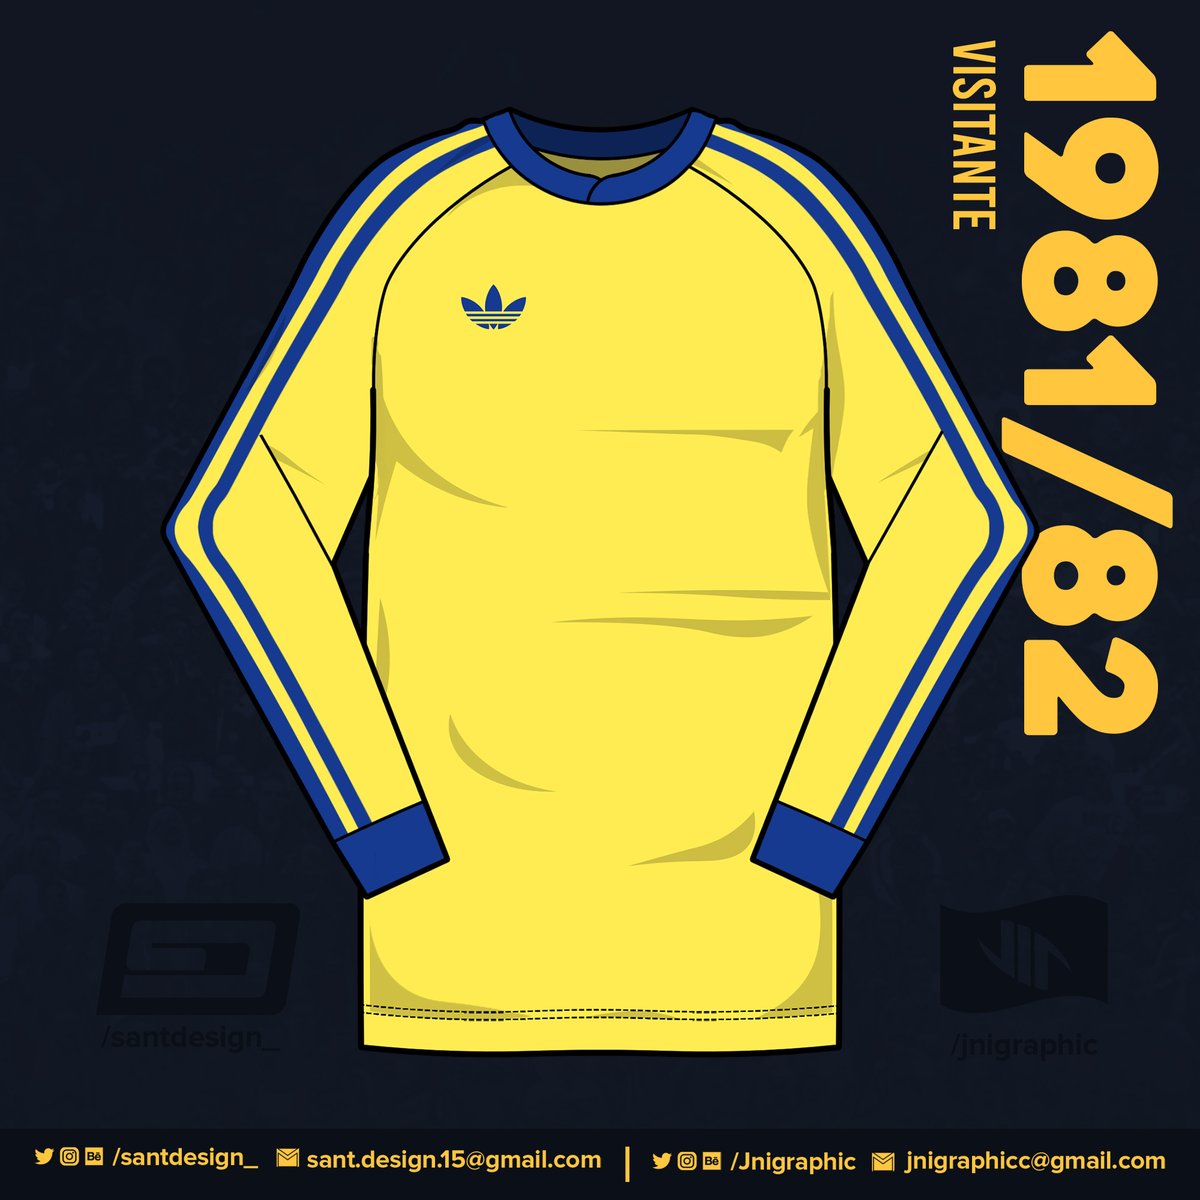 1981: La que es, quizás, la camiseta más famosa de Boca, debido a que es la cual fue utilizada por el considerado por muchos mejor jugador de la historia, Diego Armando Maradona. Con esta camiseta Boca ganó el Metropolitano de ese año.